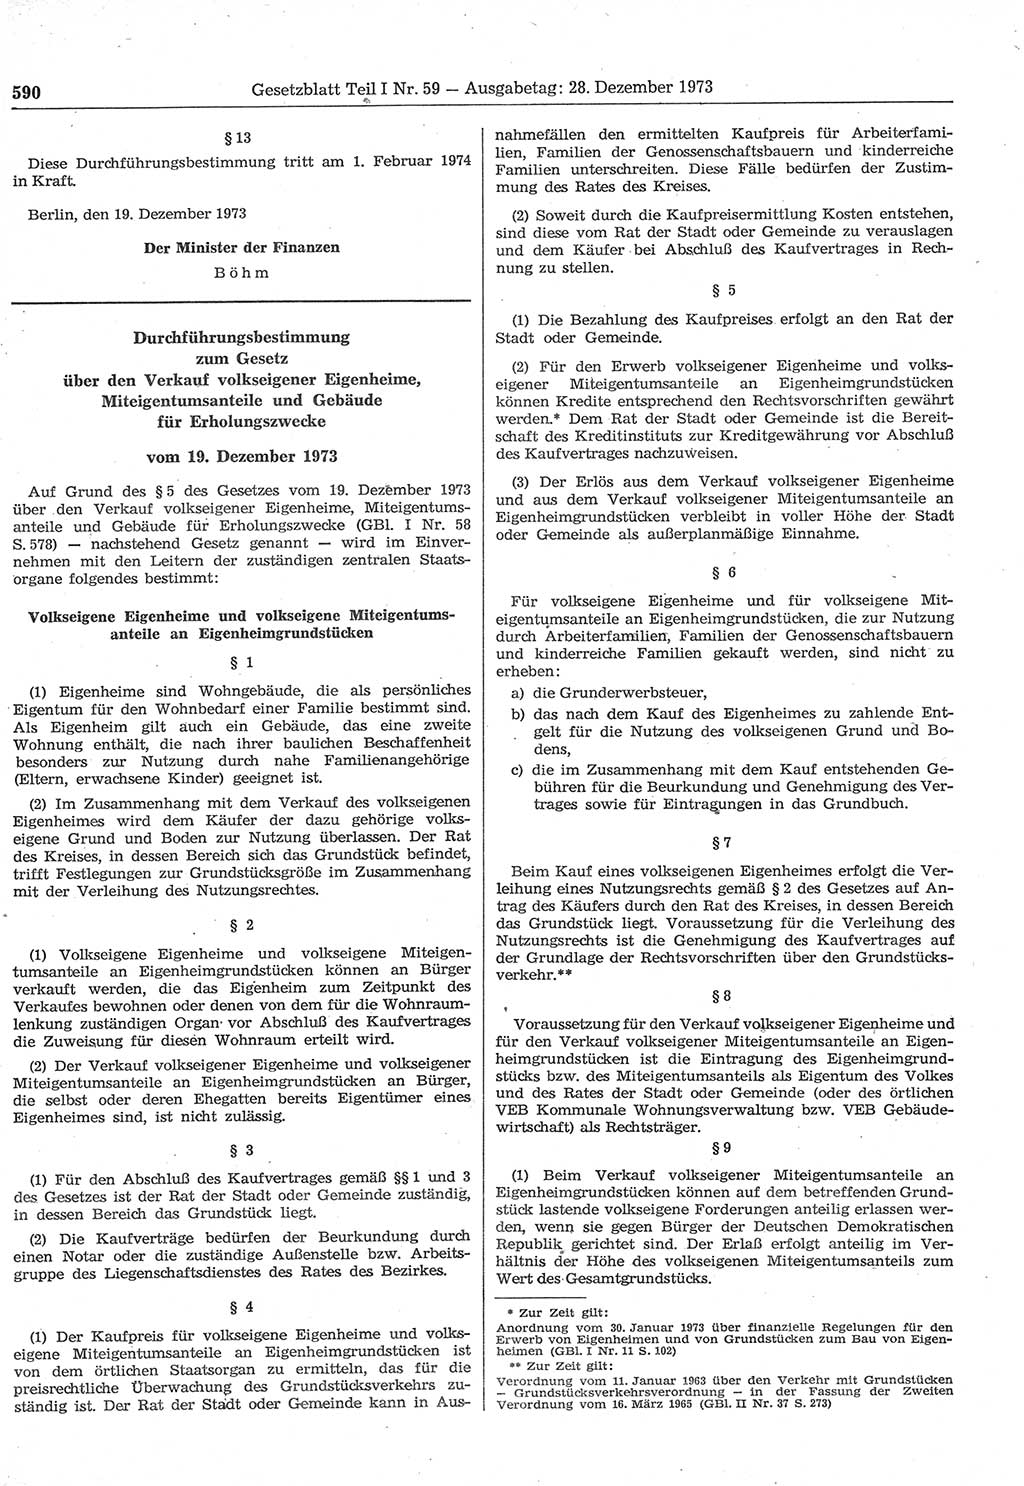 Gesetzblatt (GBl.) der Deutschen Demokratischen Republik (DDR) Teil Ⅰ 1973, Seite 590 (GBl. DDR Ⅰ 1973, S. 590)